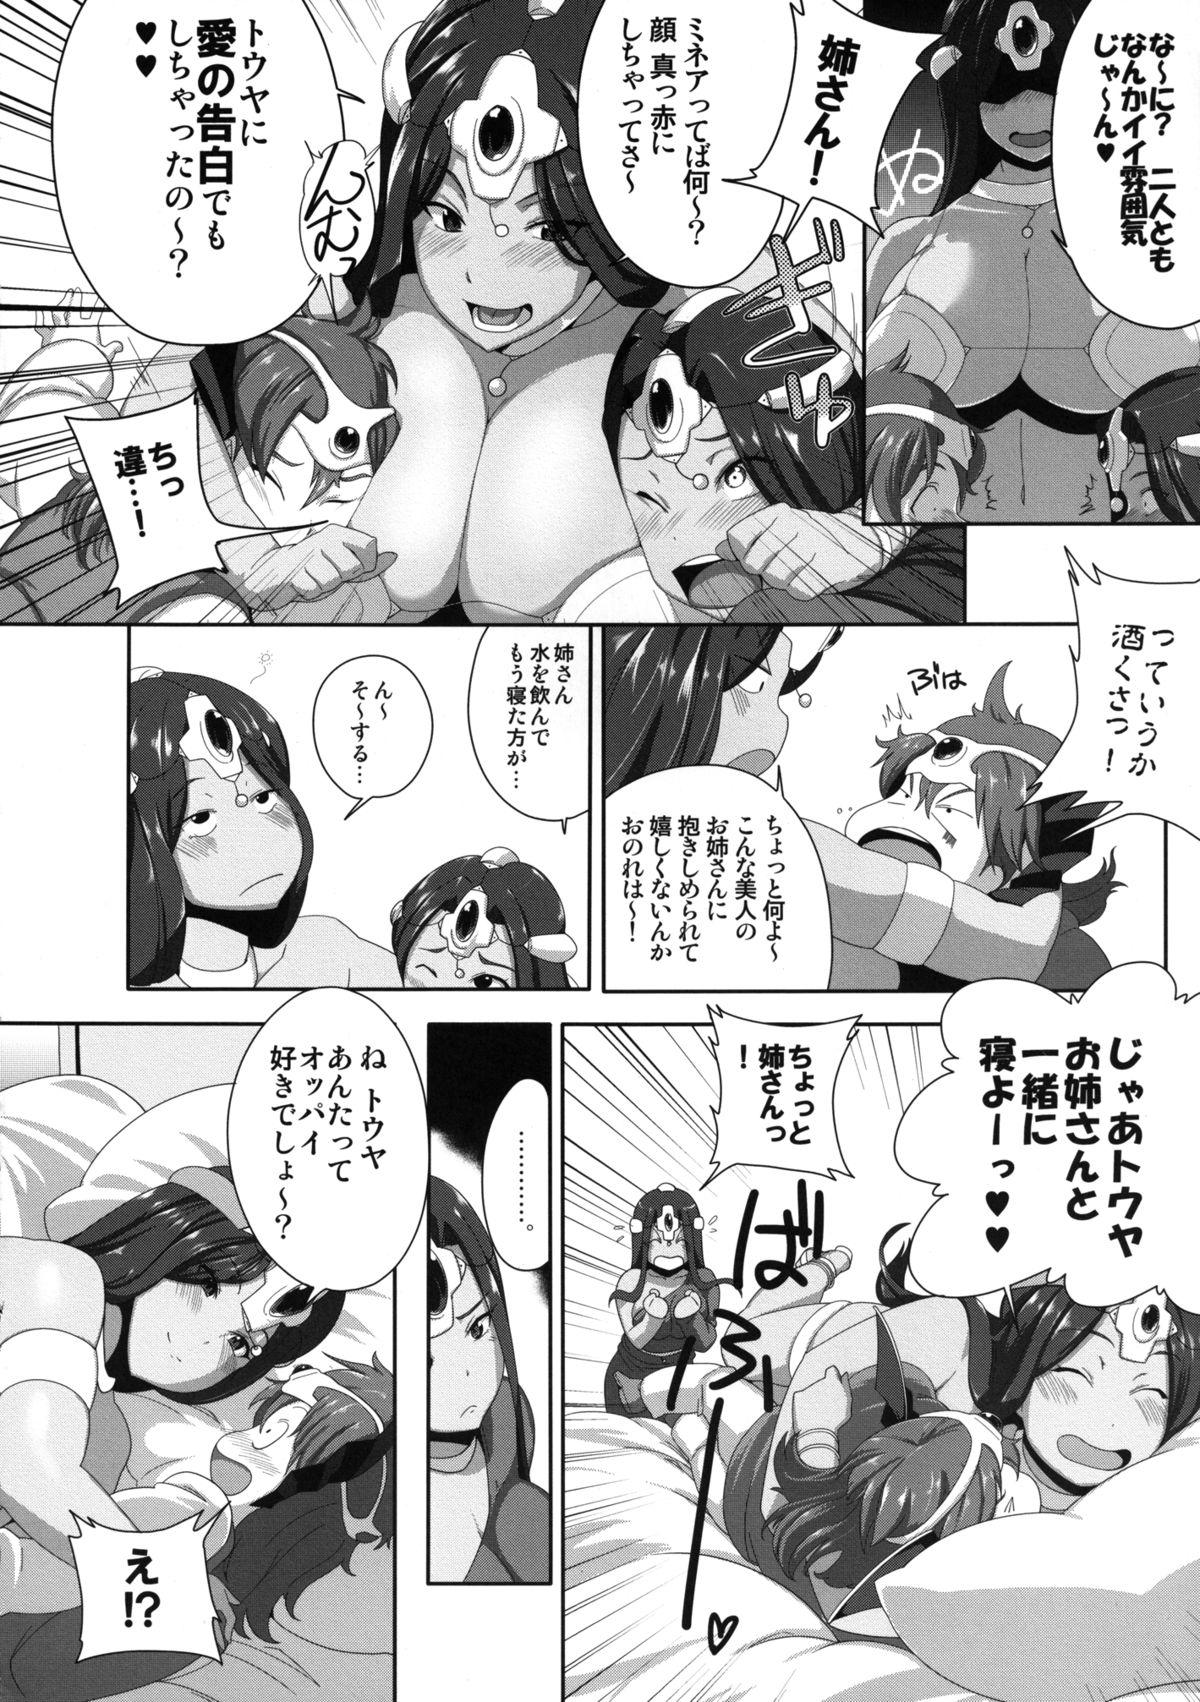 Consolo Futachichi Chucchu!! - Dragon quest iv Rubdown - Page 6